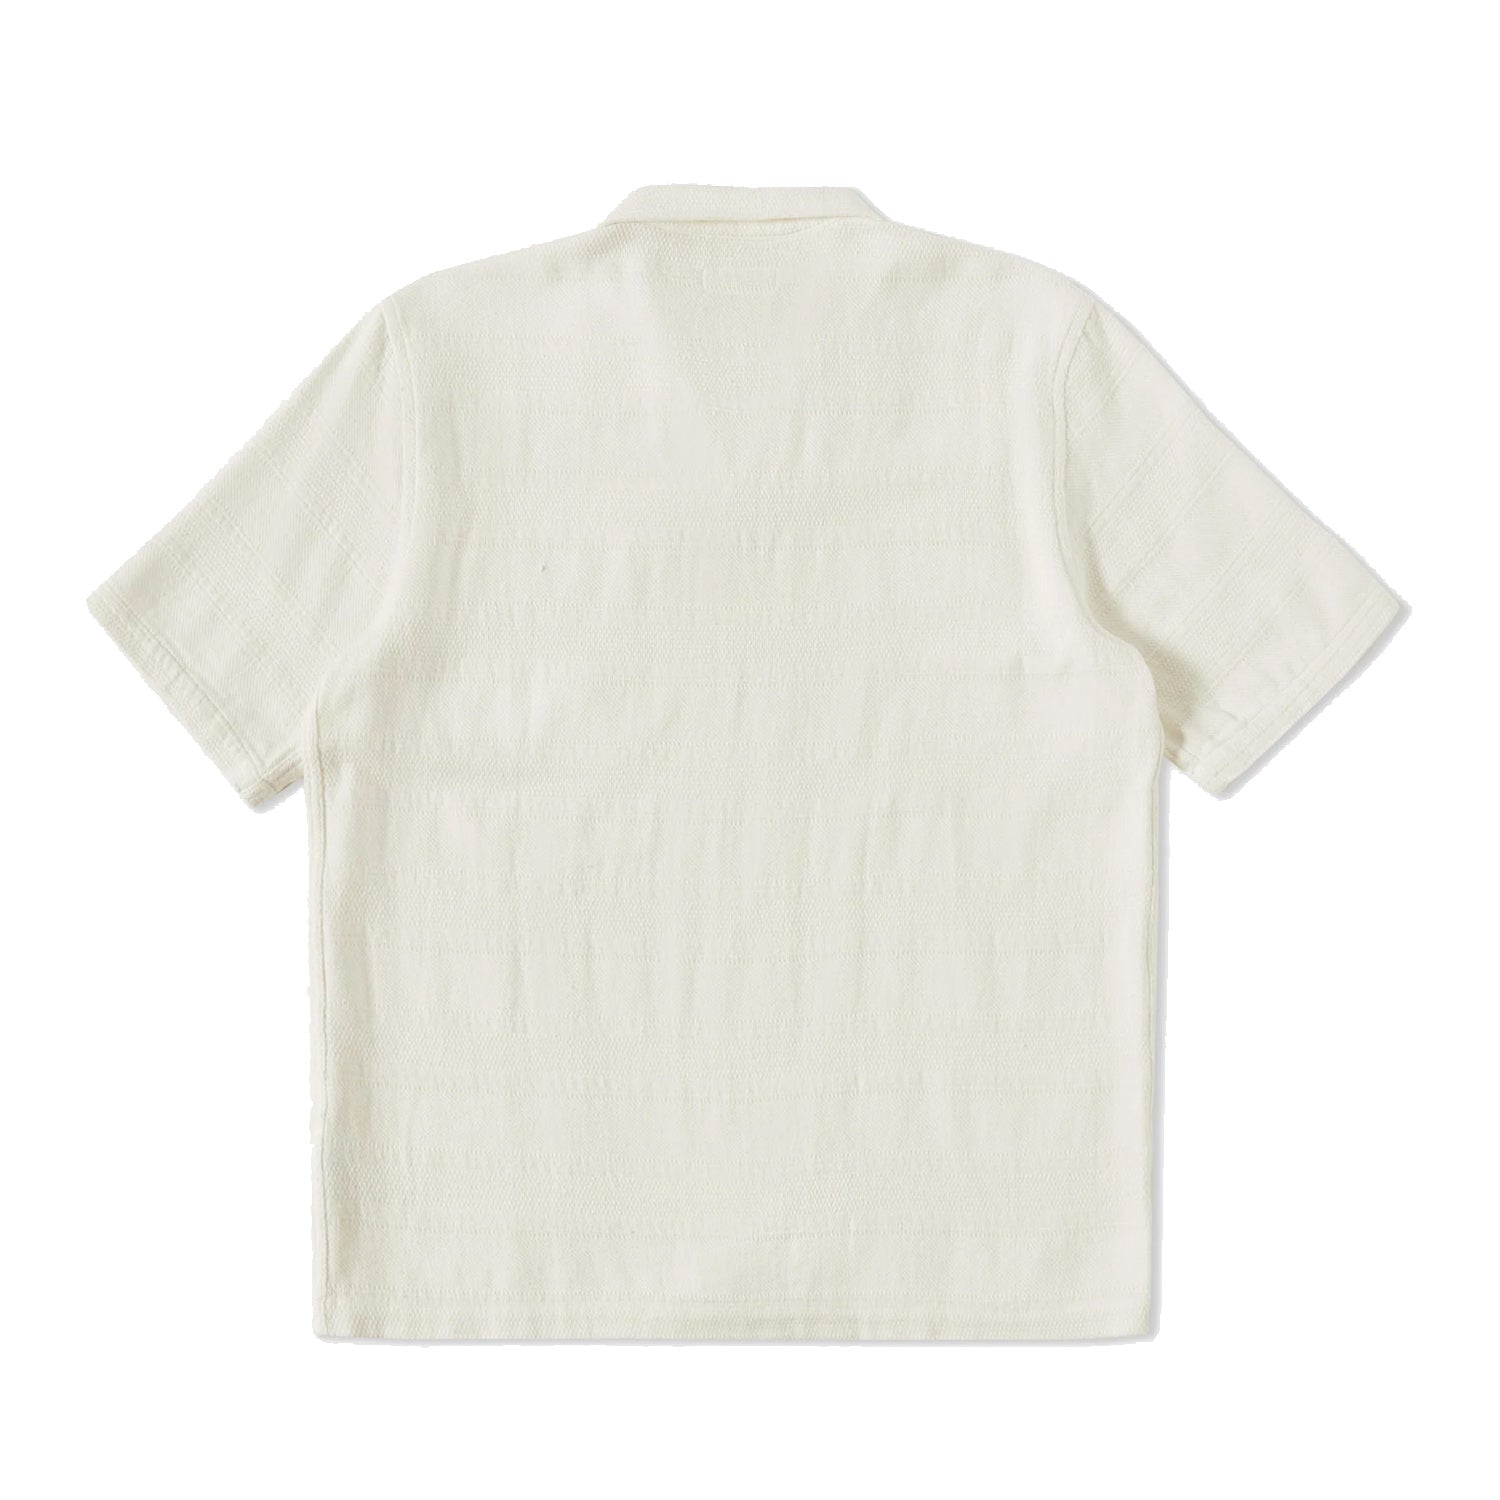 Road Shirt - Tipzzi Stripe